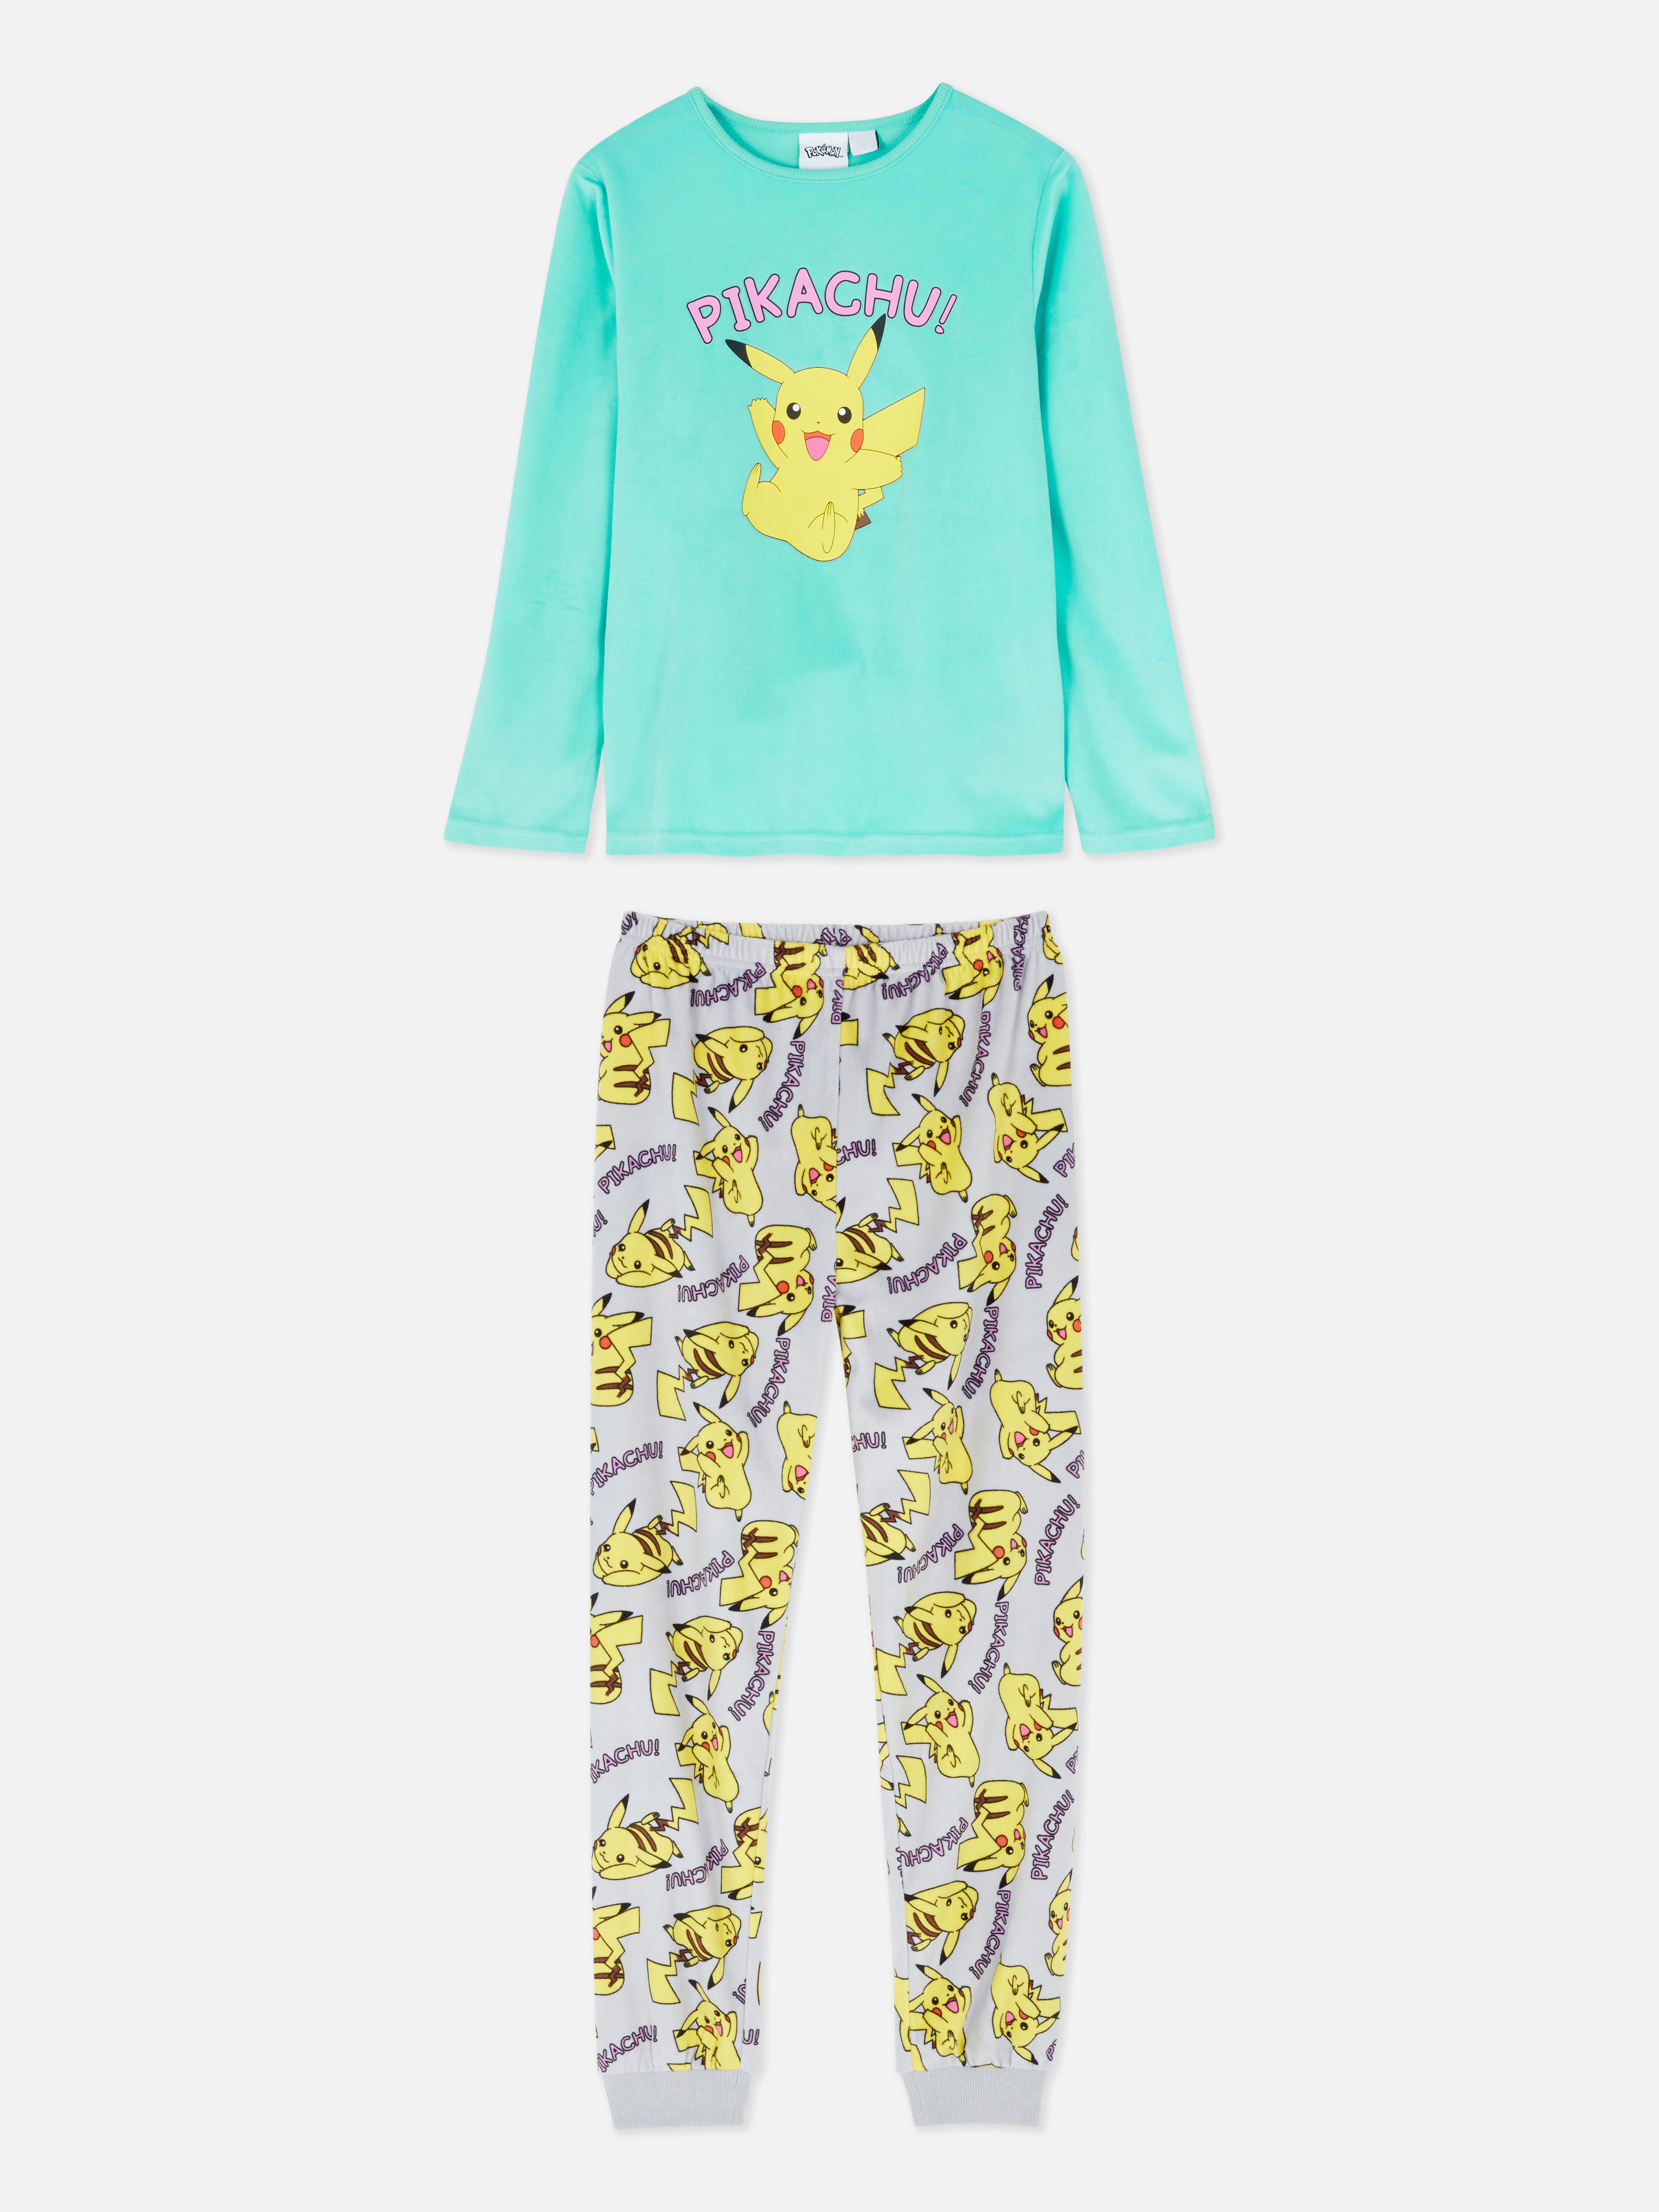 Pokémon Pikachu Pyjamas